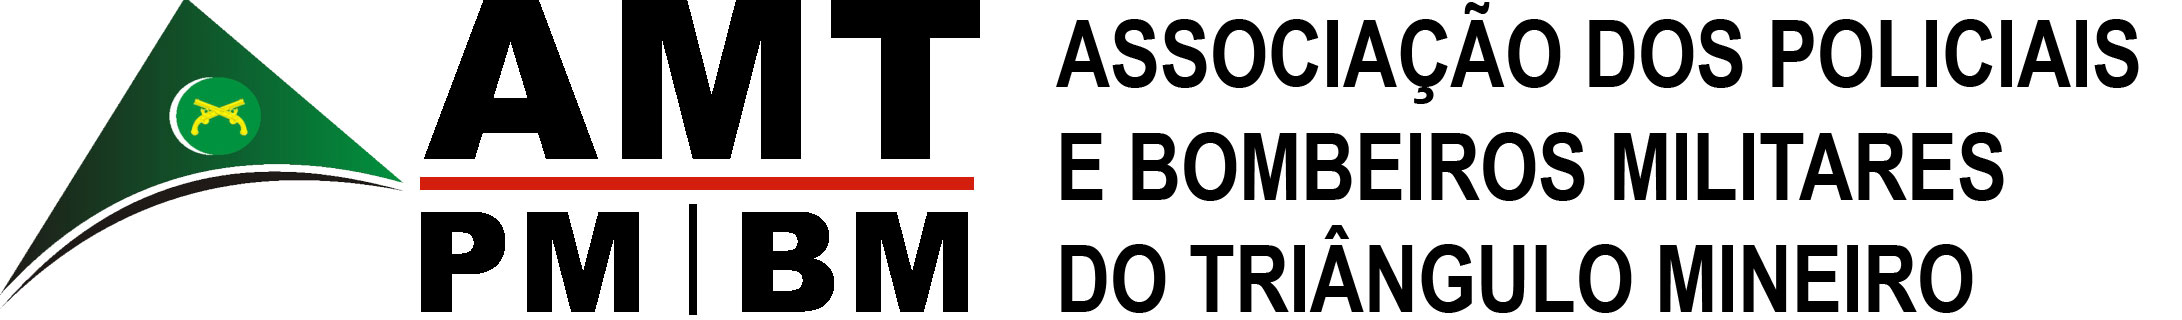 AMT - Associação dos Policiais e Bombeiros Militares do Triângulo Mineiro